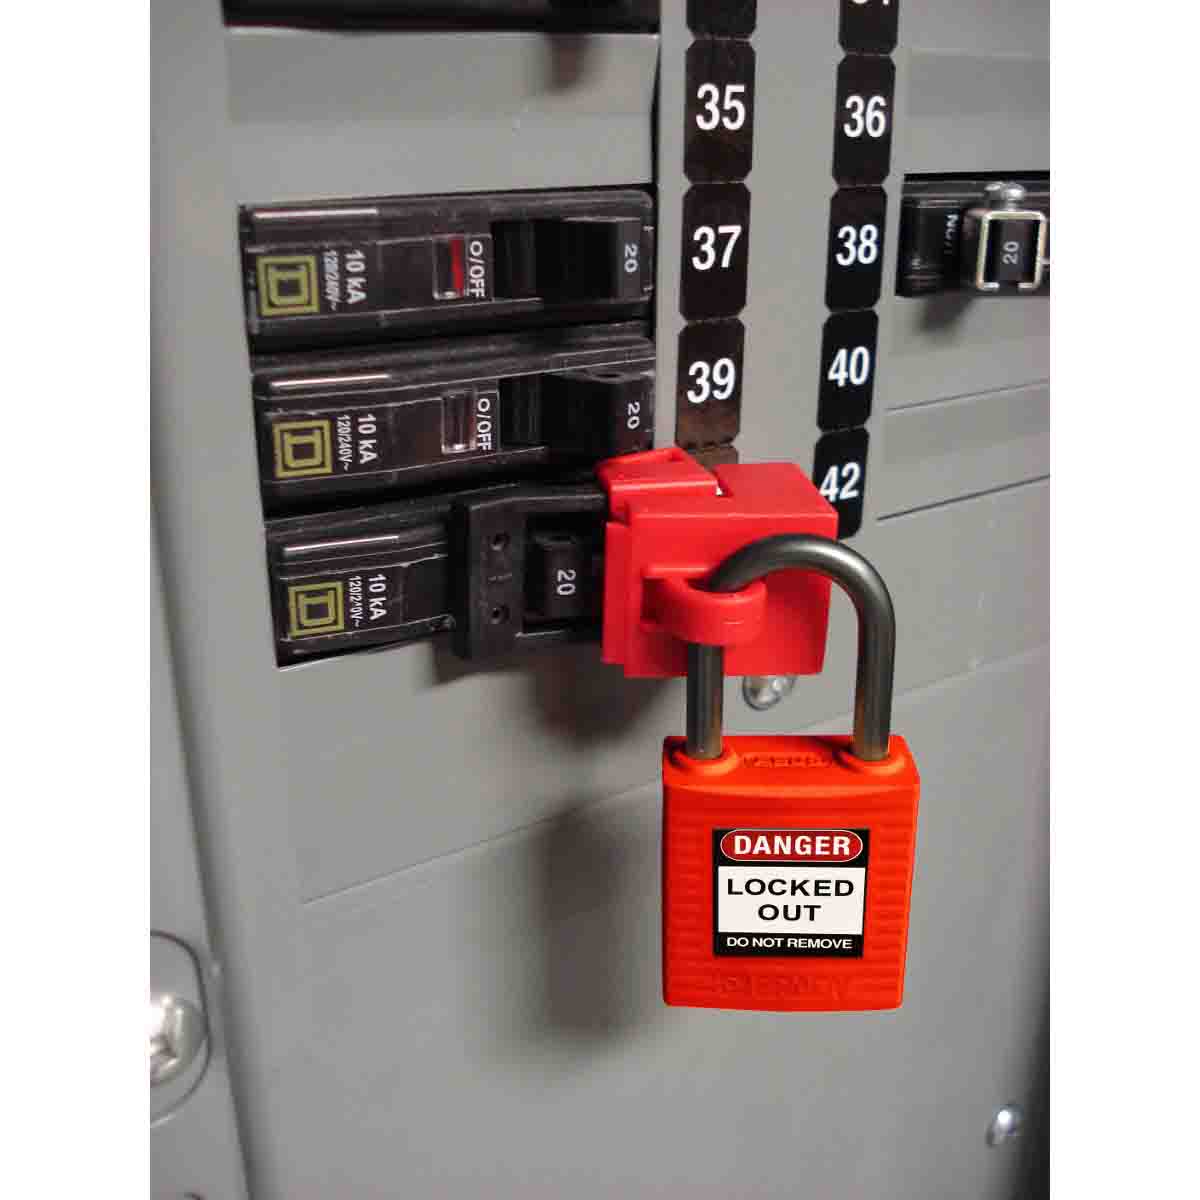 118926 | Candado de seguridad compacto, color rojo. (6 unds)